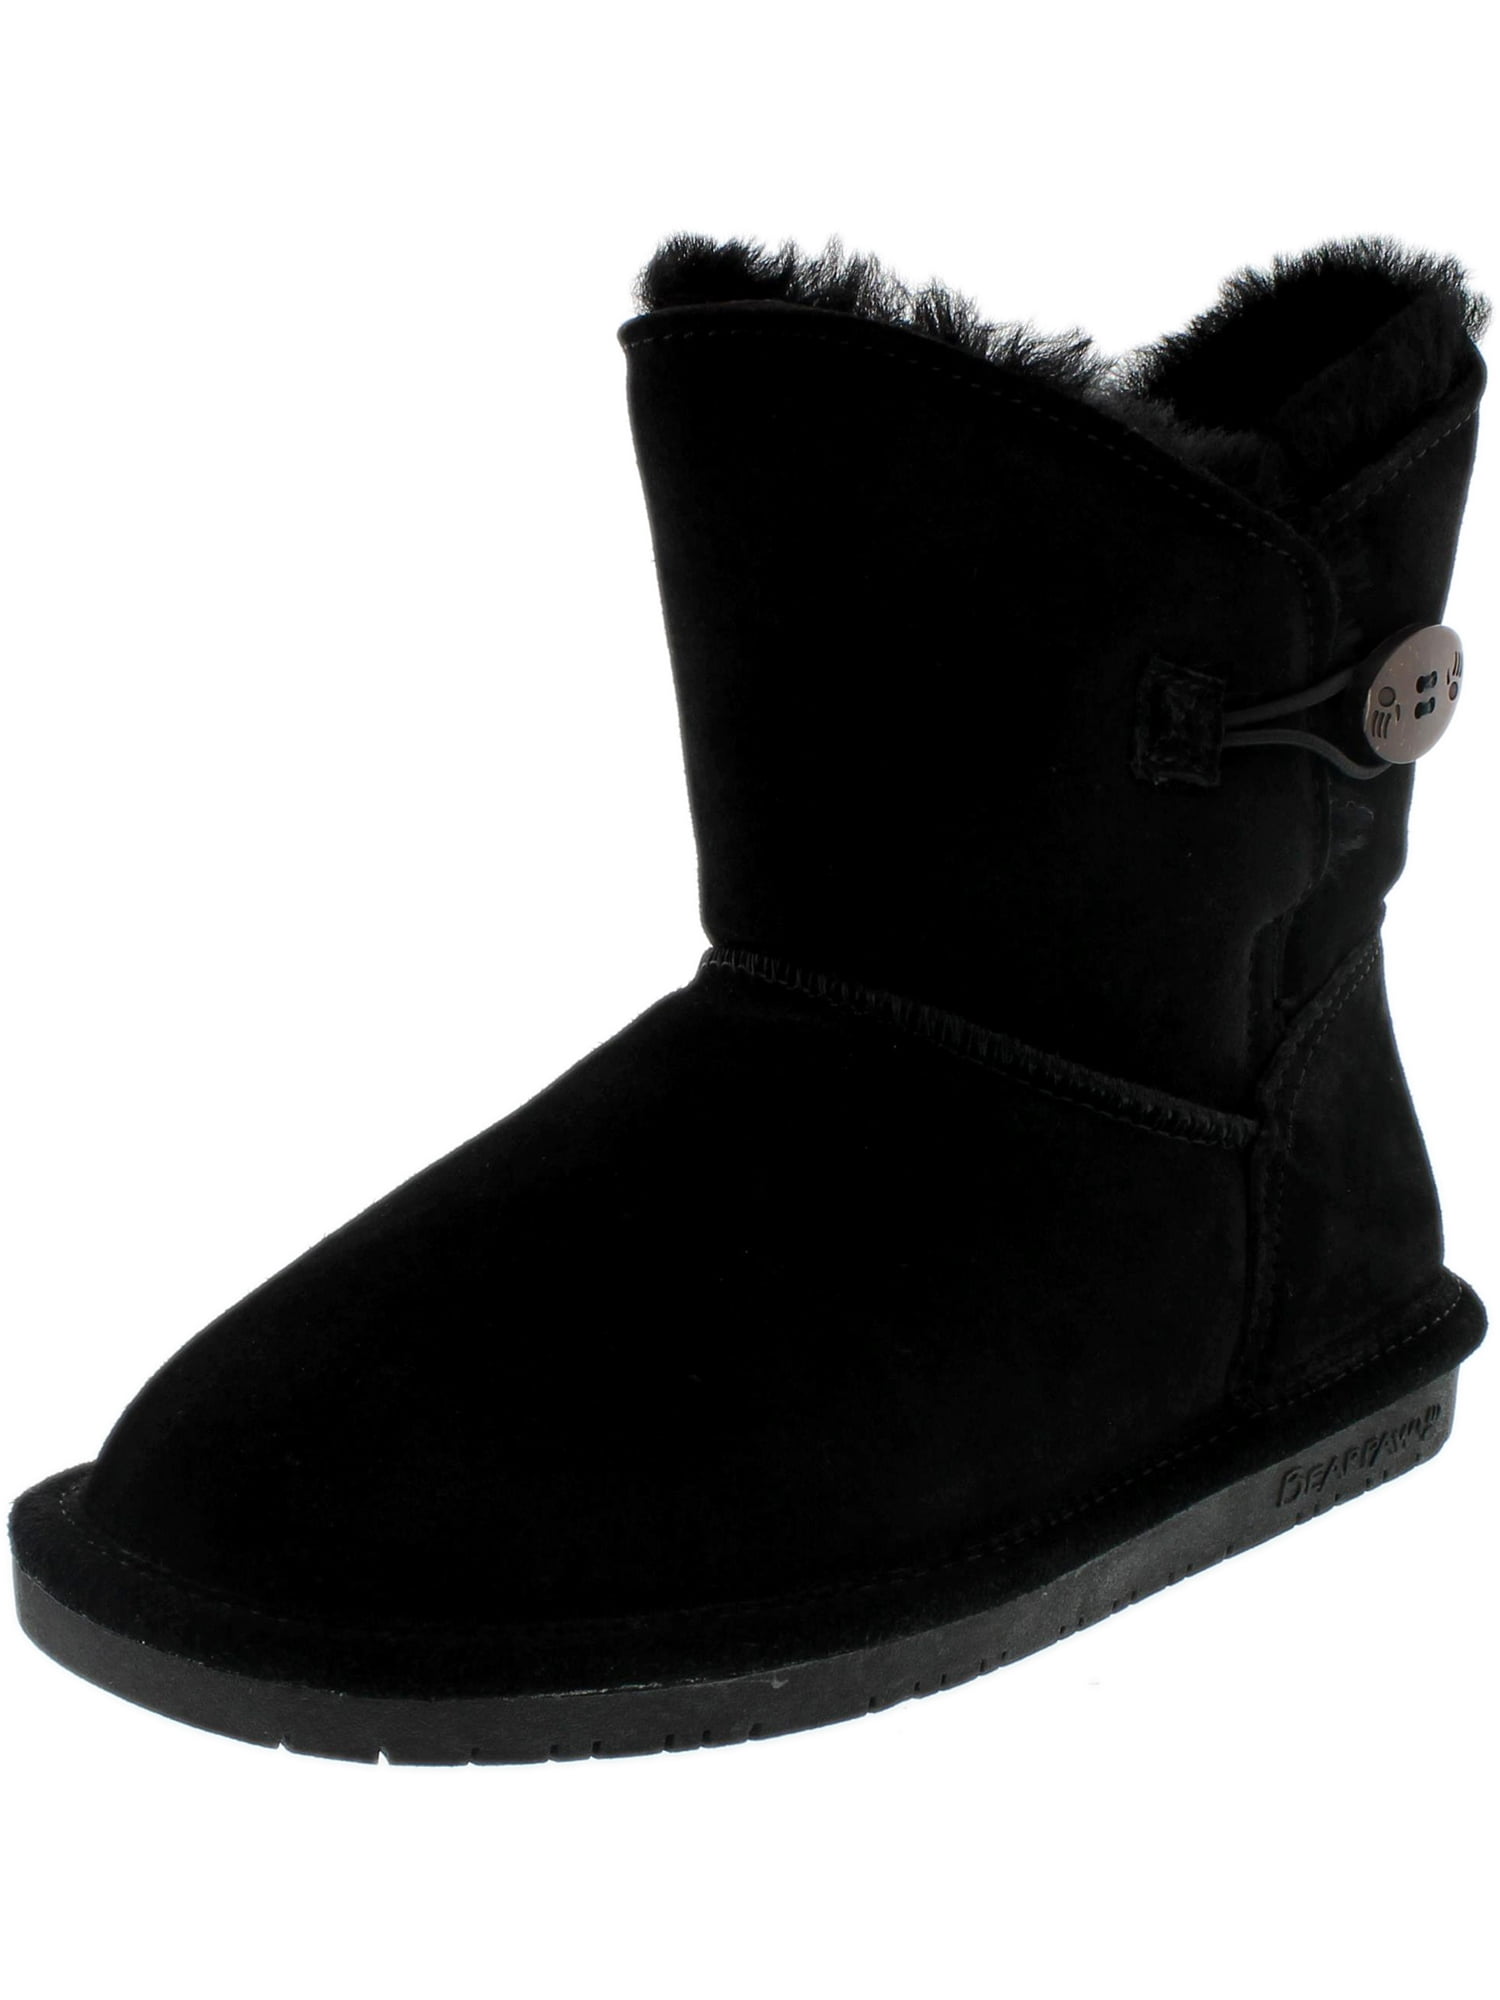 Buy > hugs winter boots > in stock